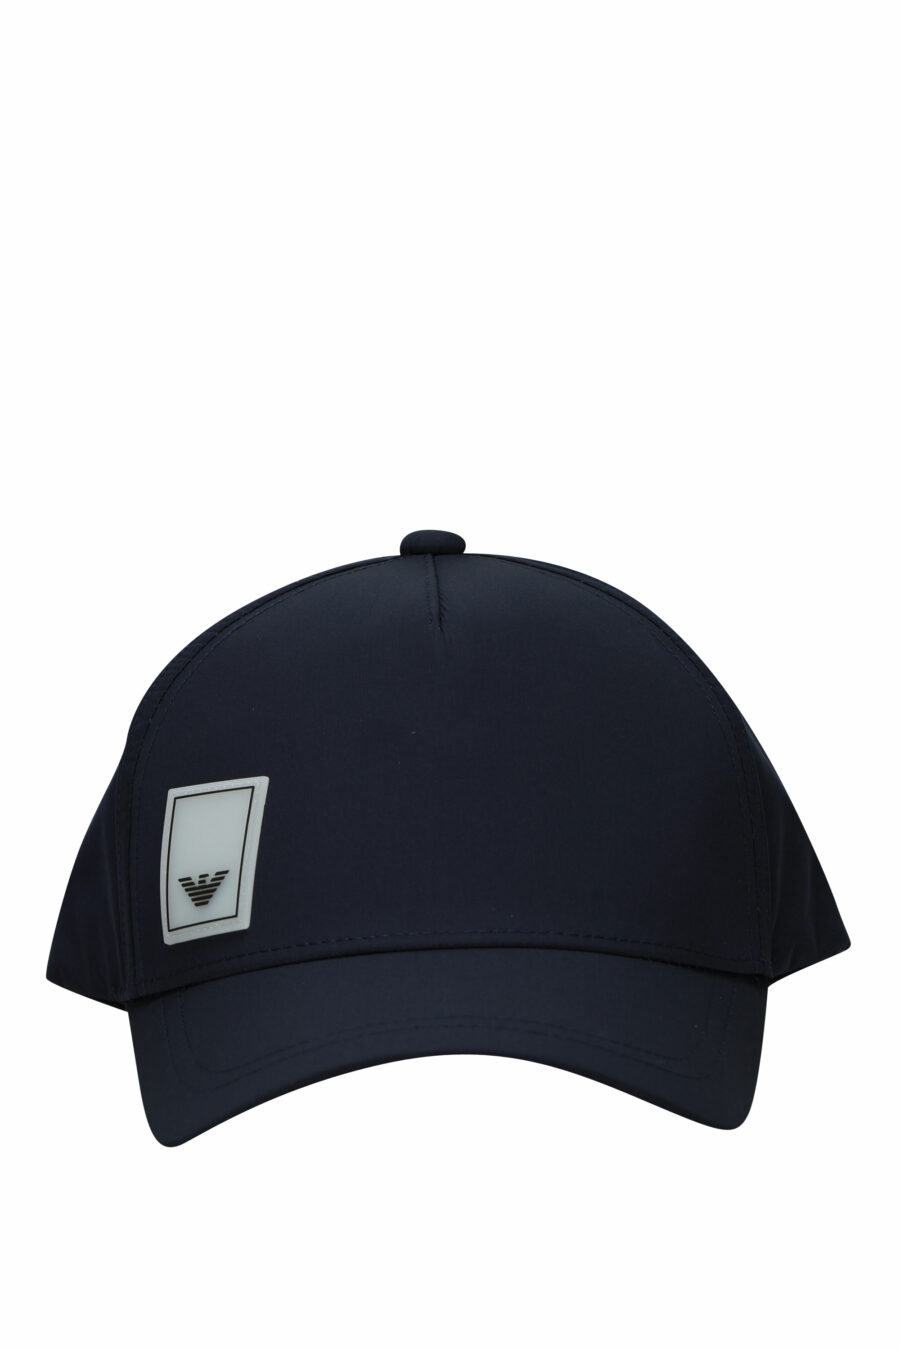 Gorra azul oscuro con logo etiqueta águila - 8058997153355